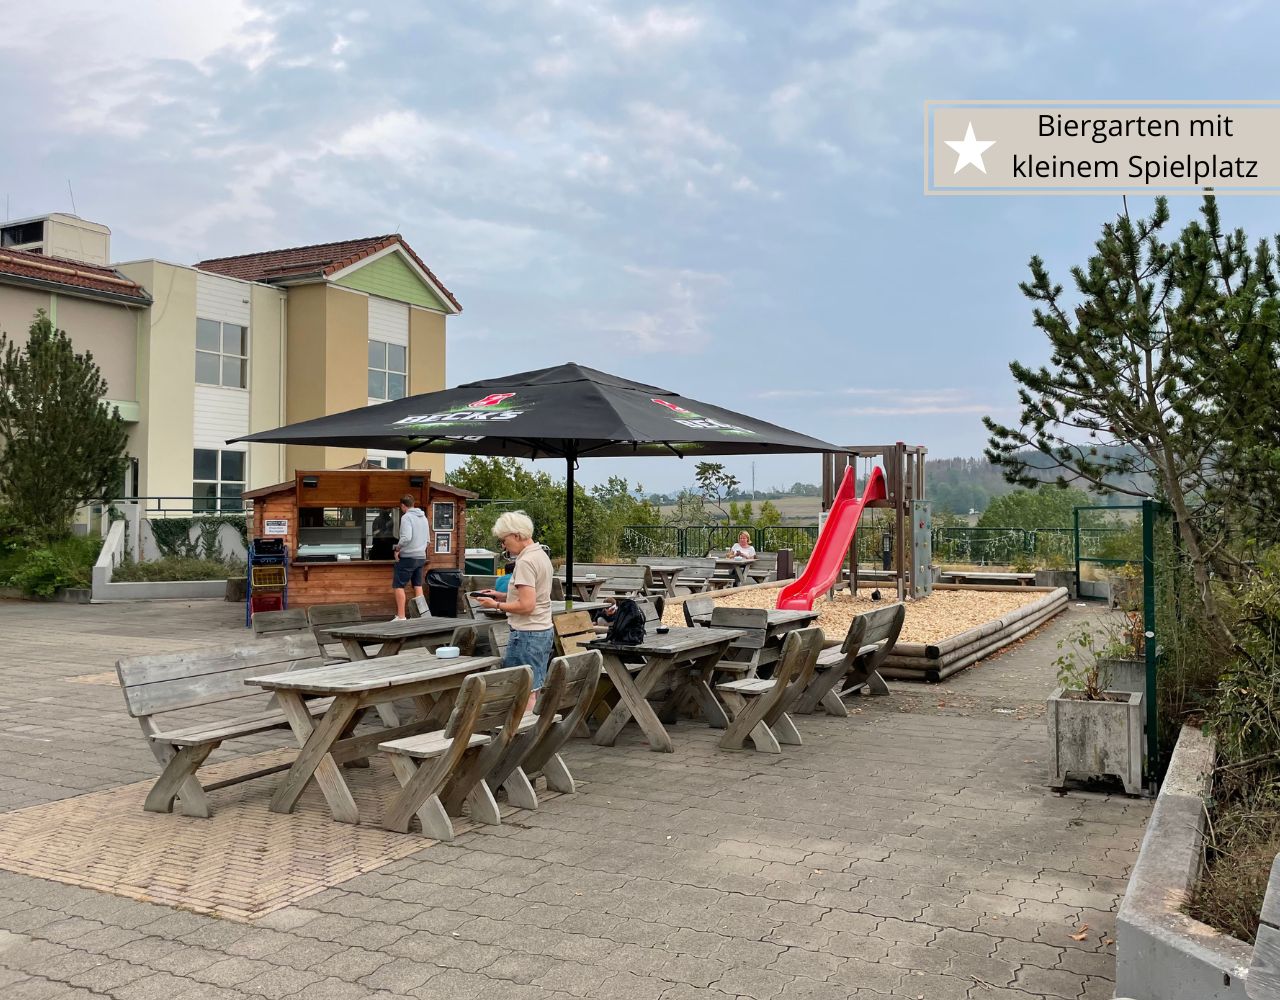 Center Parcs Hochsauerland - Biergarten mit kleinem Spielplatz